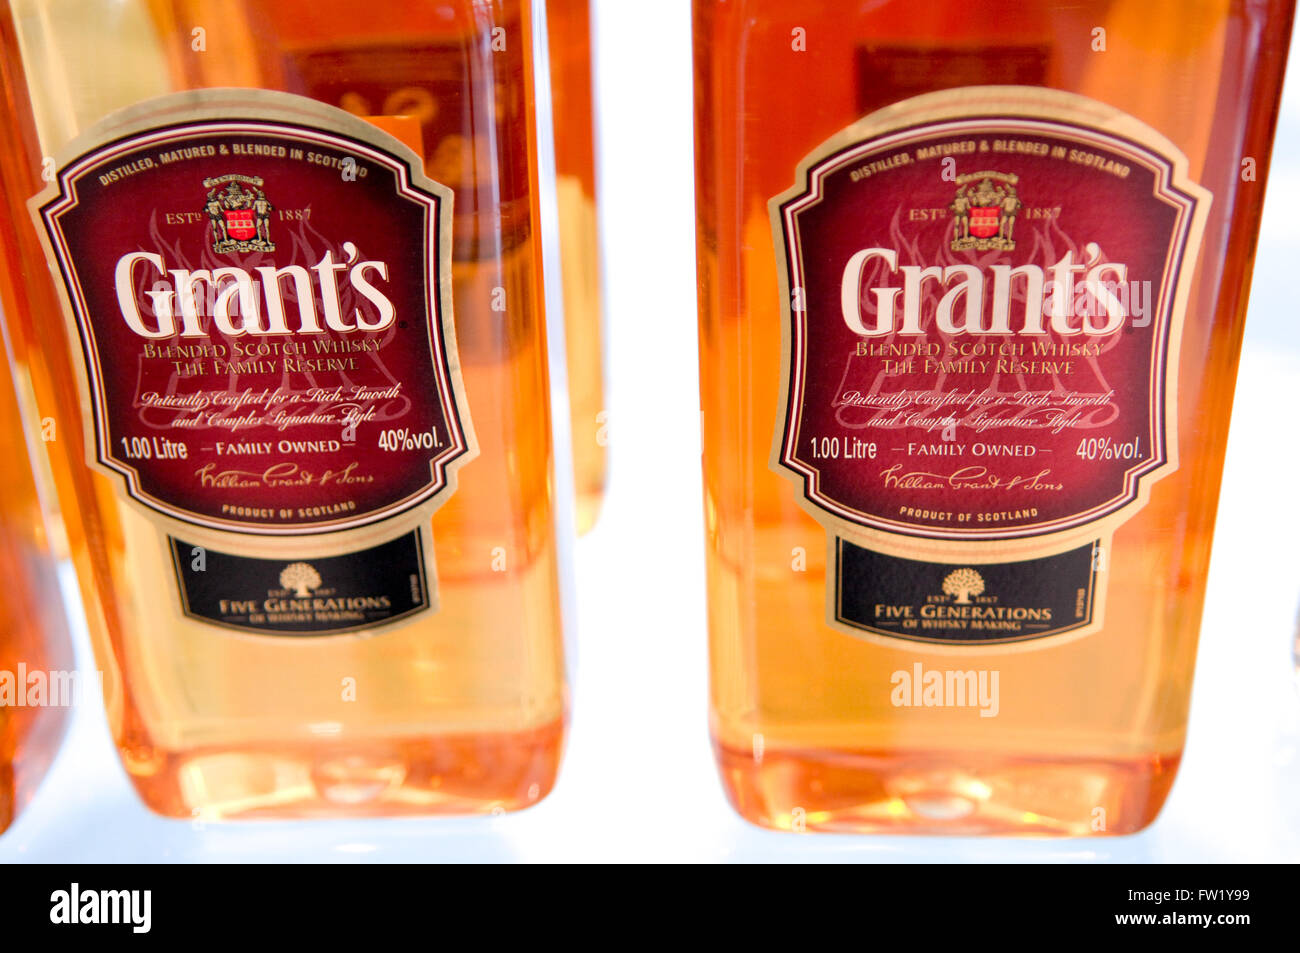 Grant's blended Scotch whisky embouteillé par William Grant & Sons en Ecosse Banque D'Images